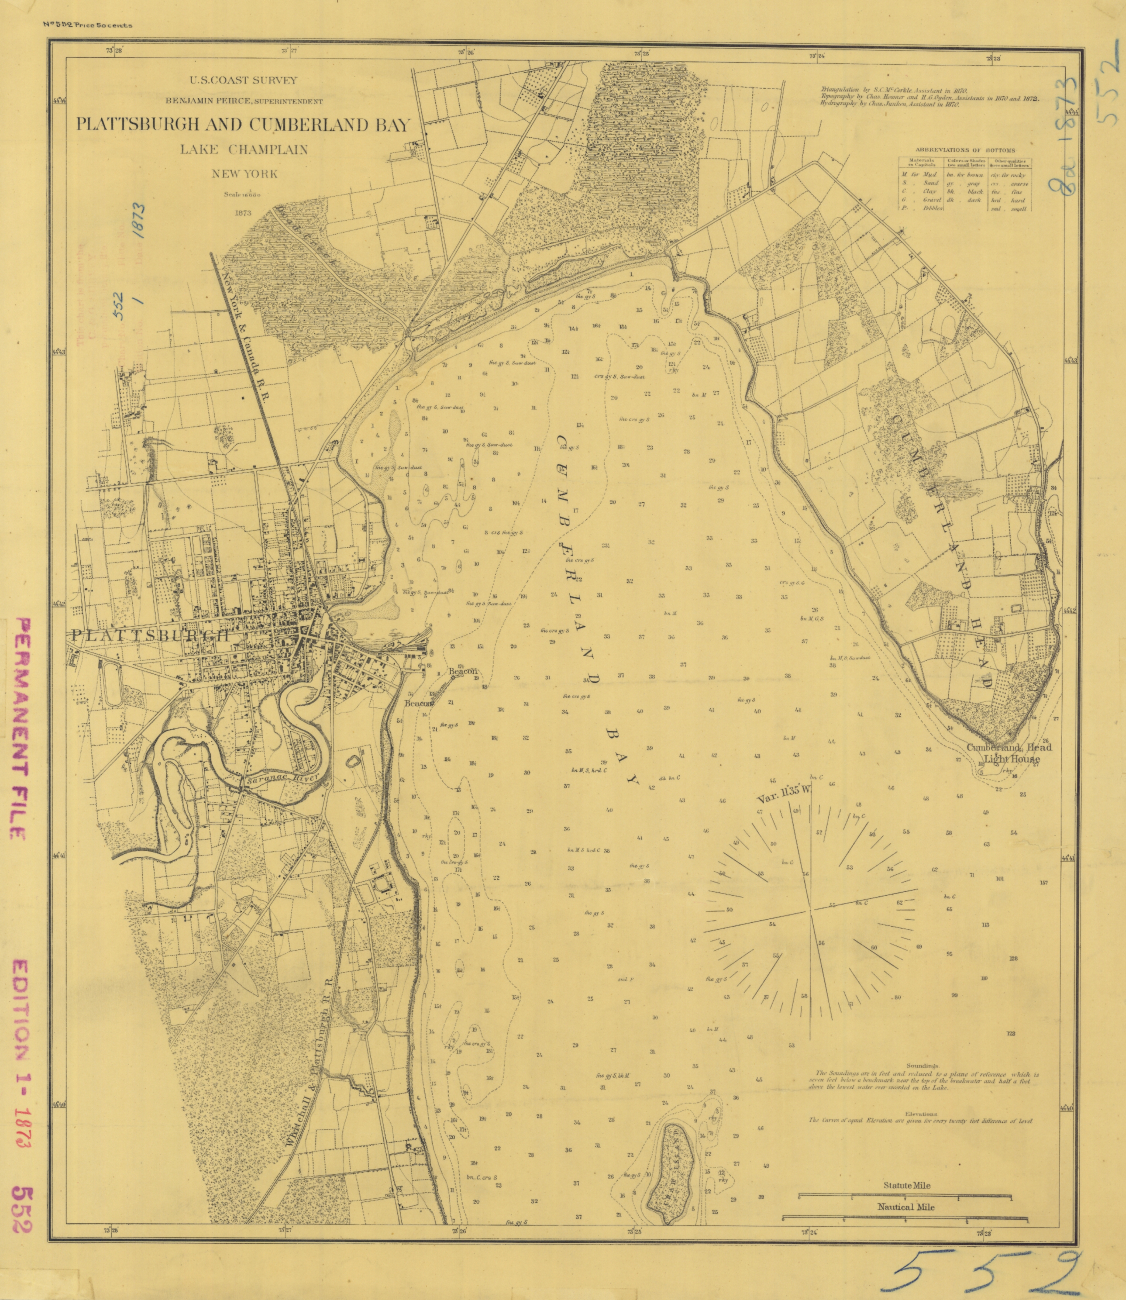 Topographic chart of Plattsburgh and Cumberland Bay, Lake Champlain, New York